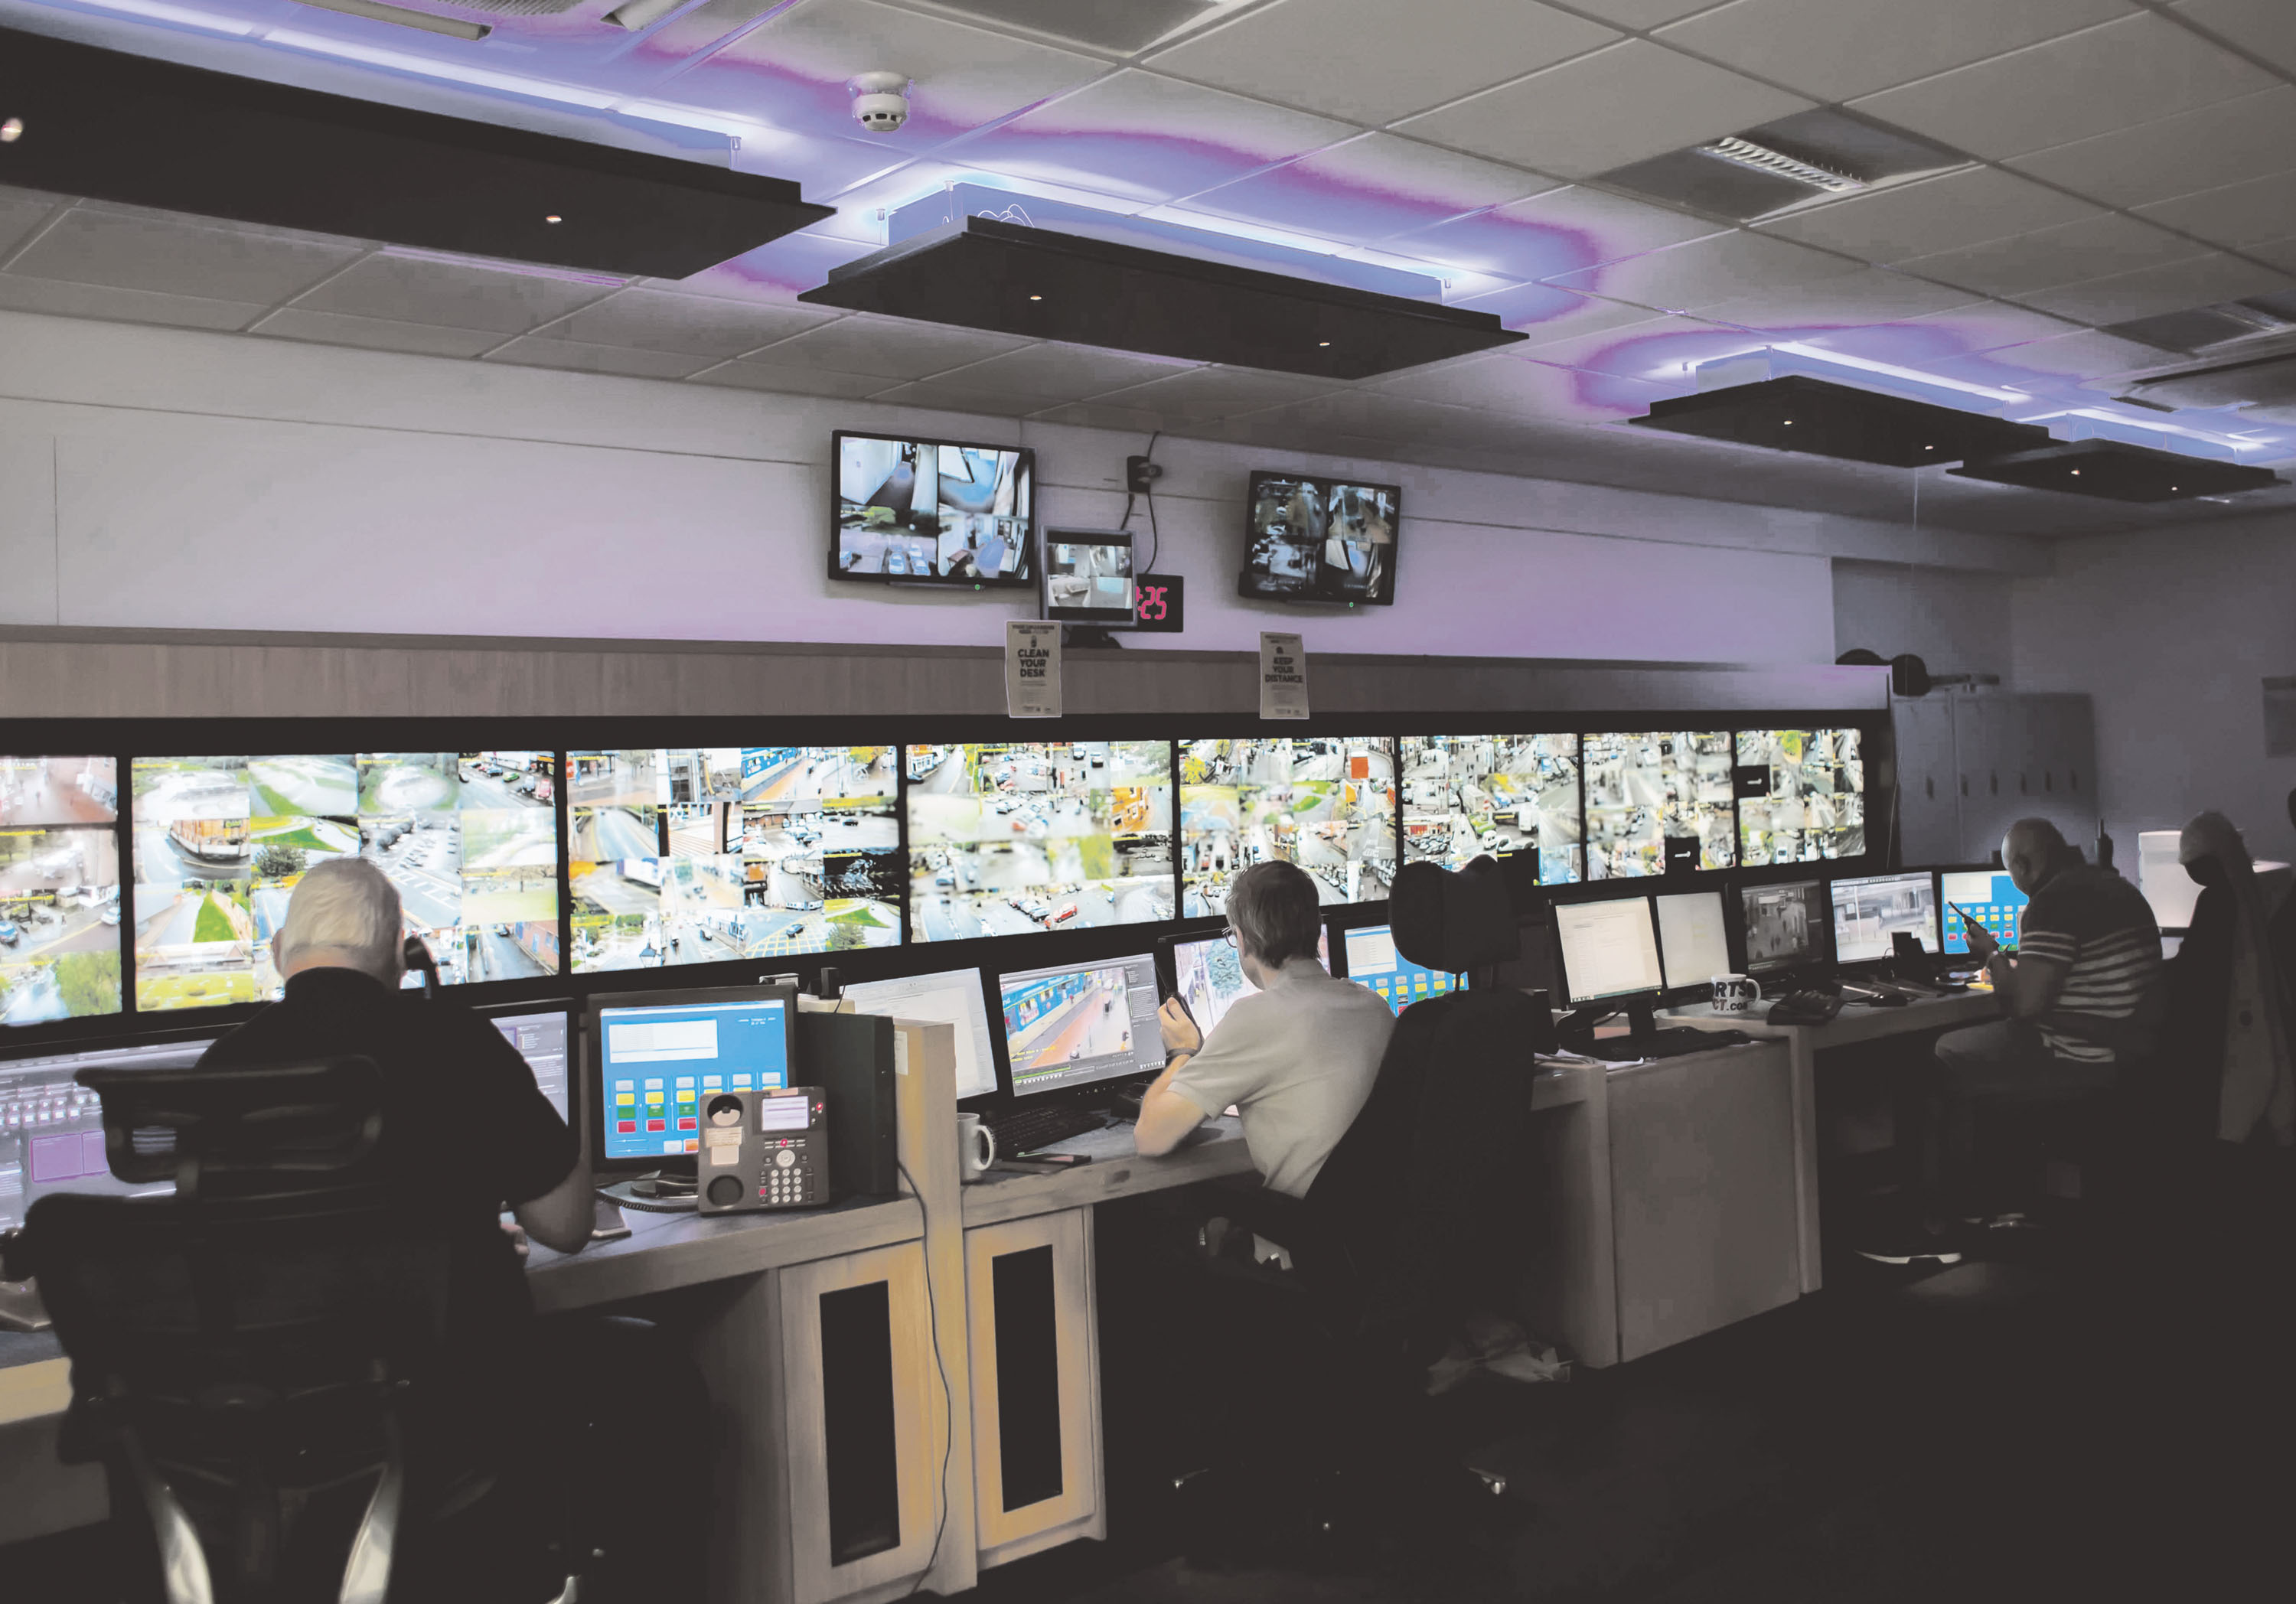 CCTV network goes digital